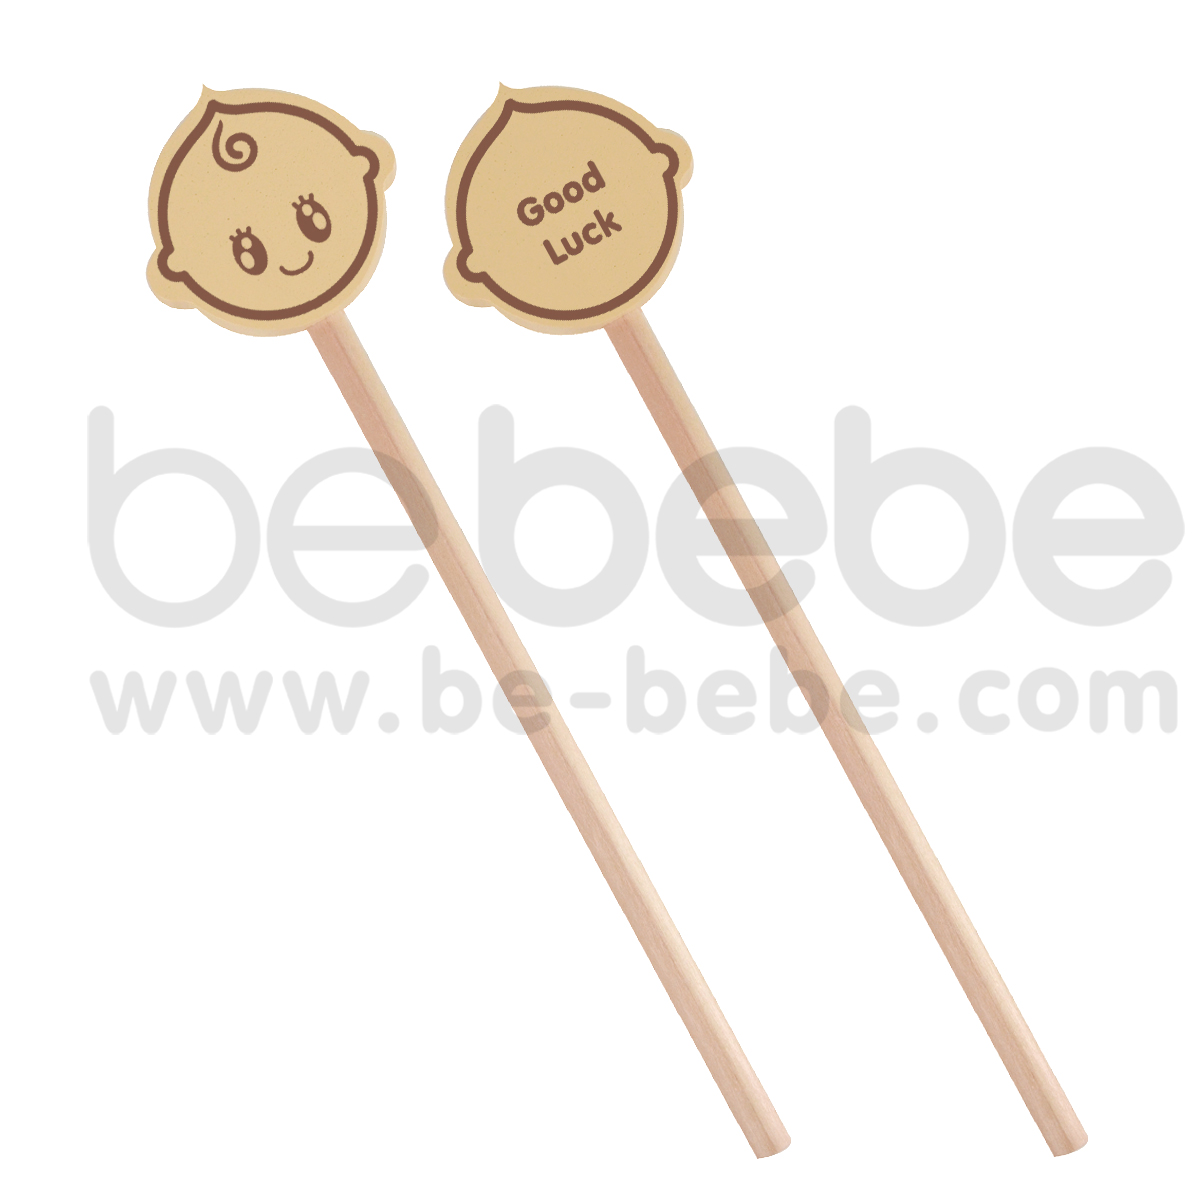 bebebe : Cream Pencil- Good Luck